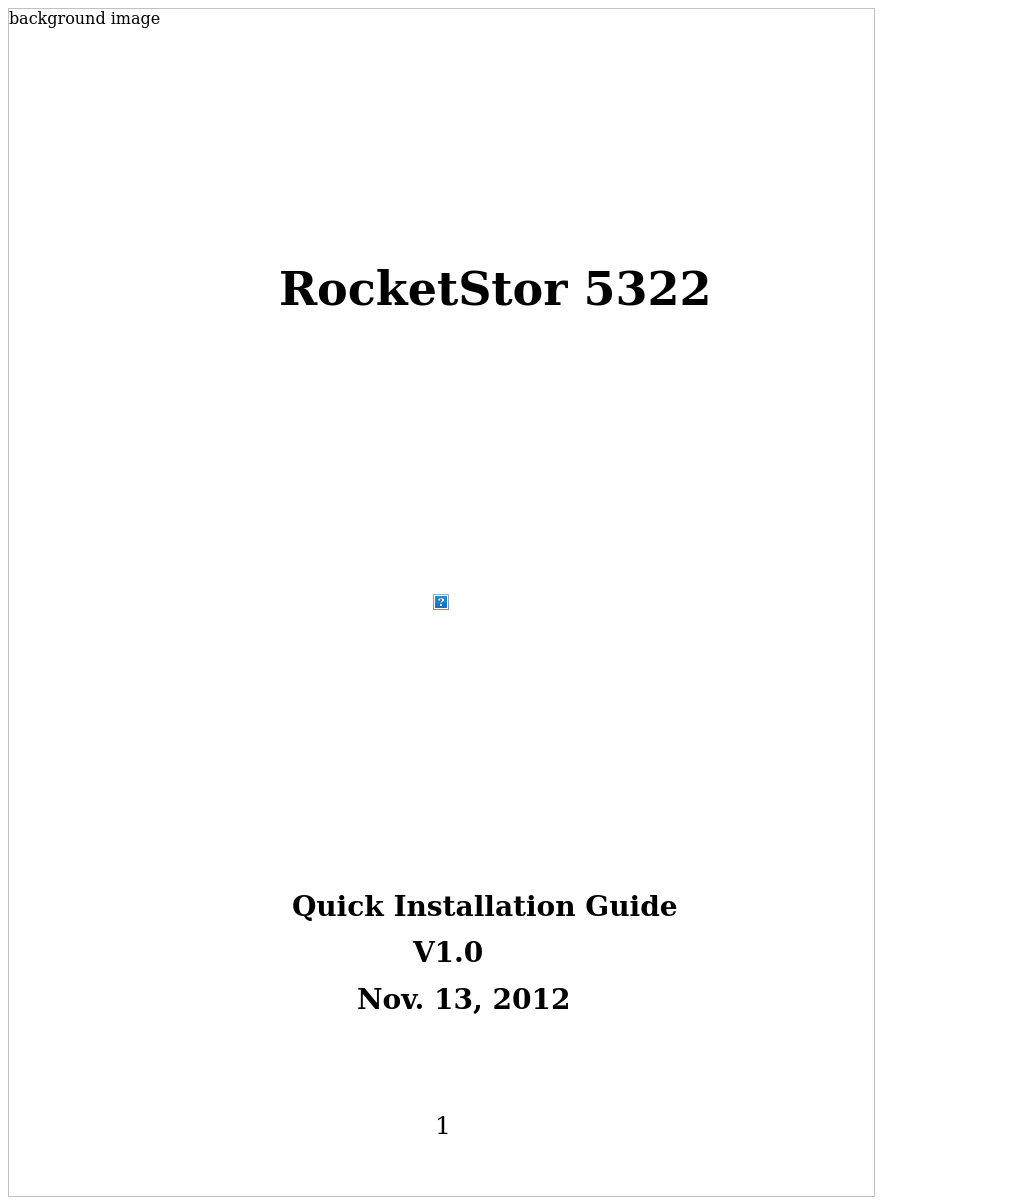 RocketStor 5322